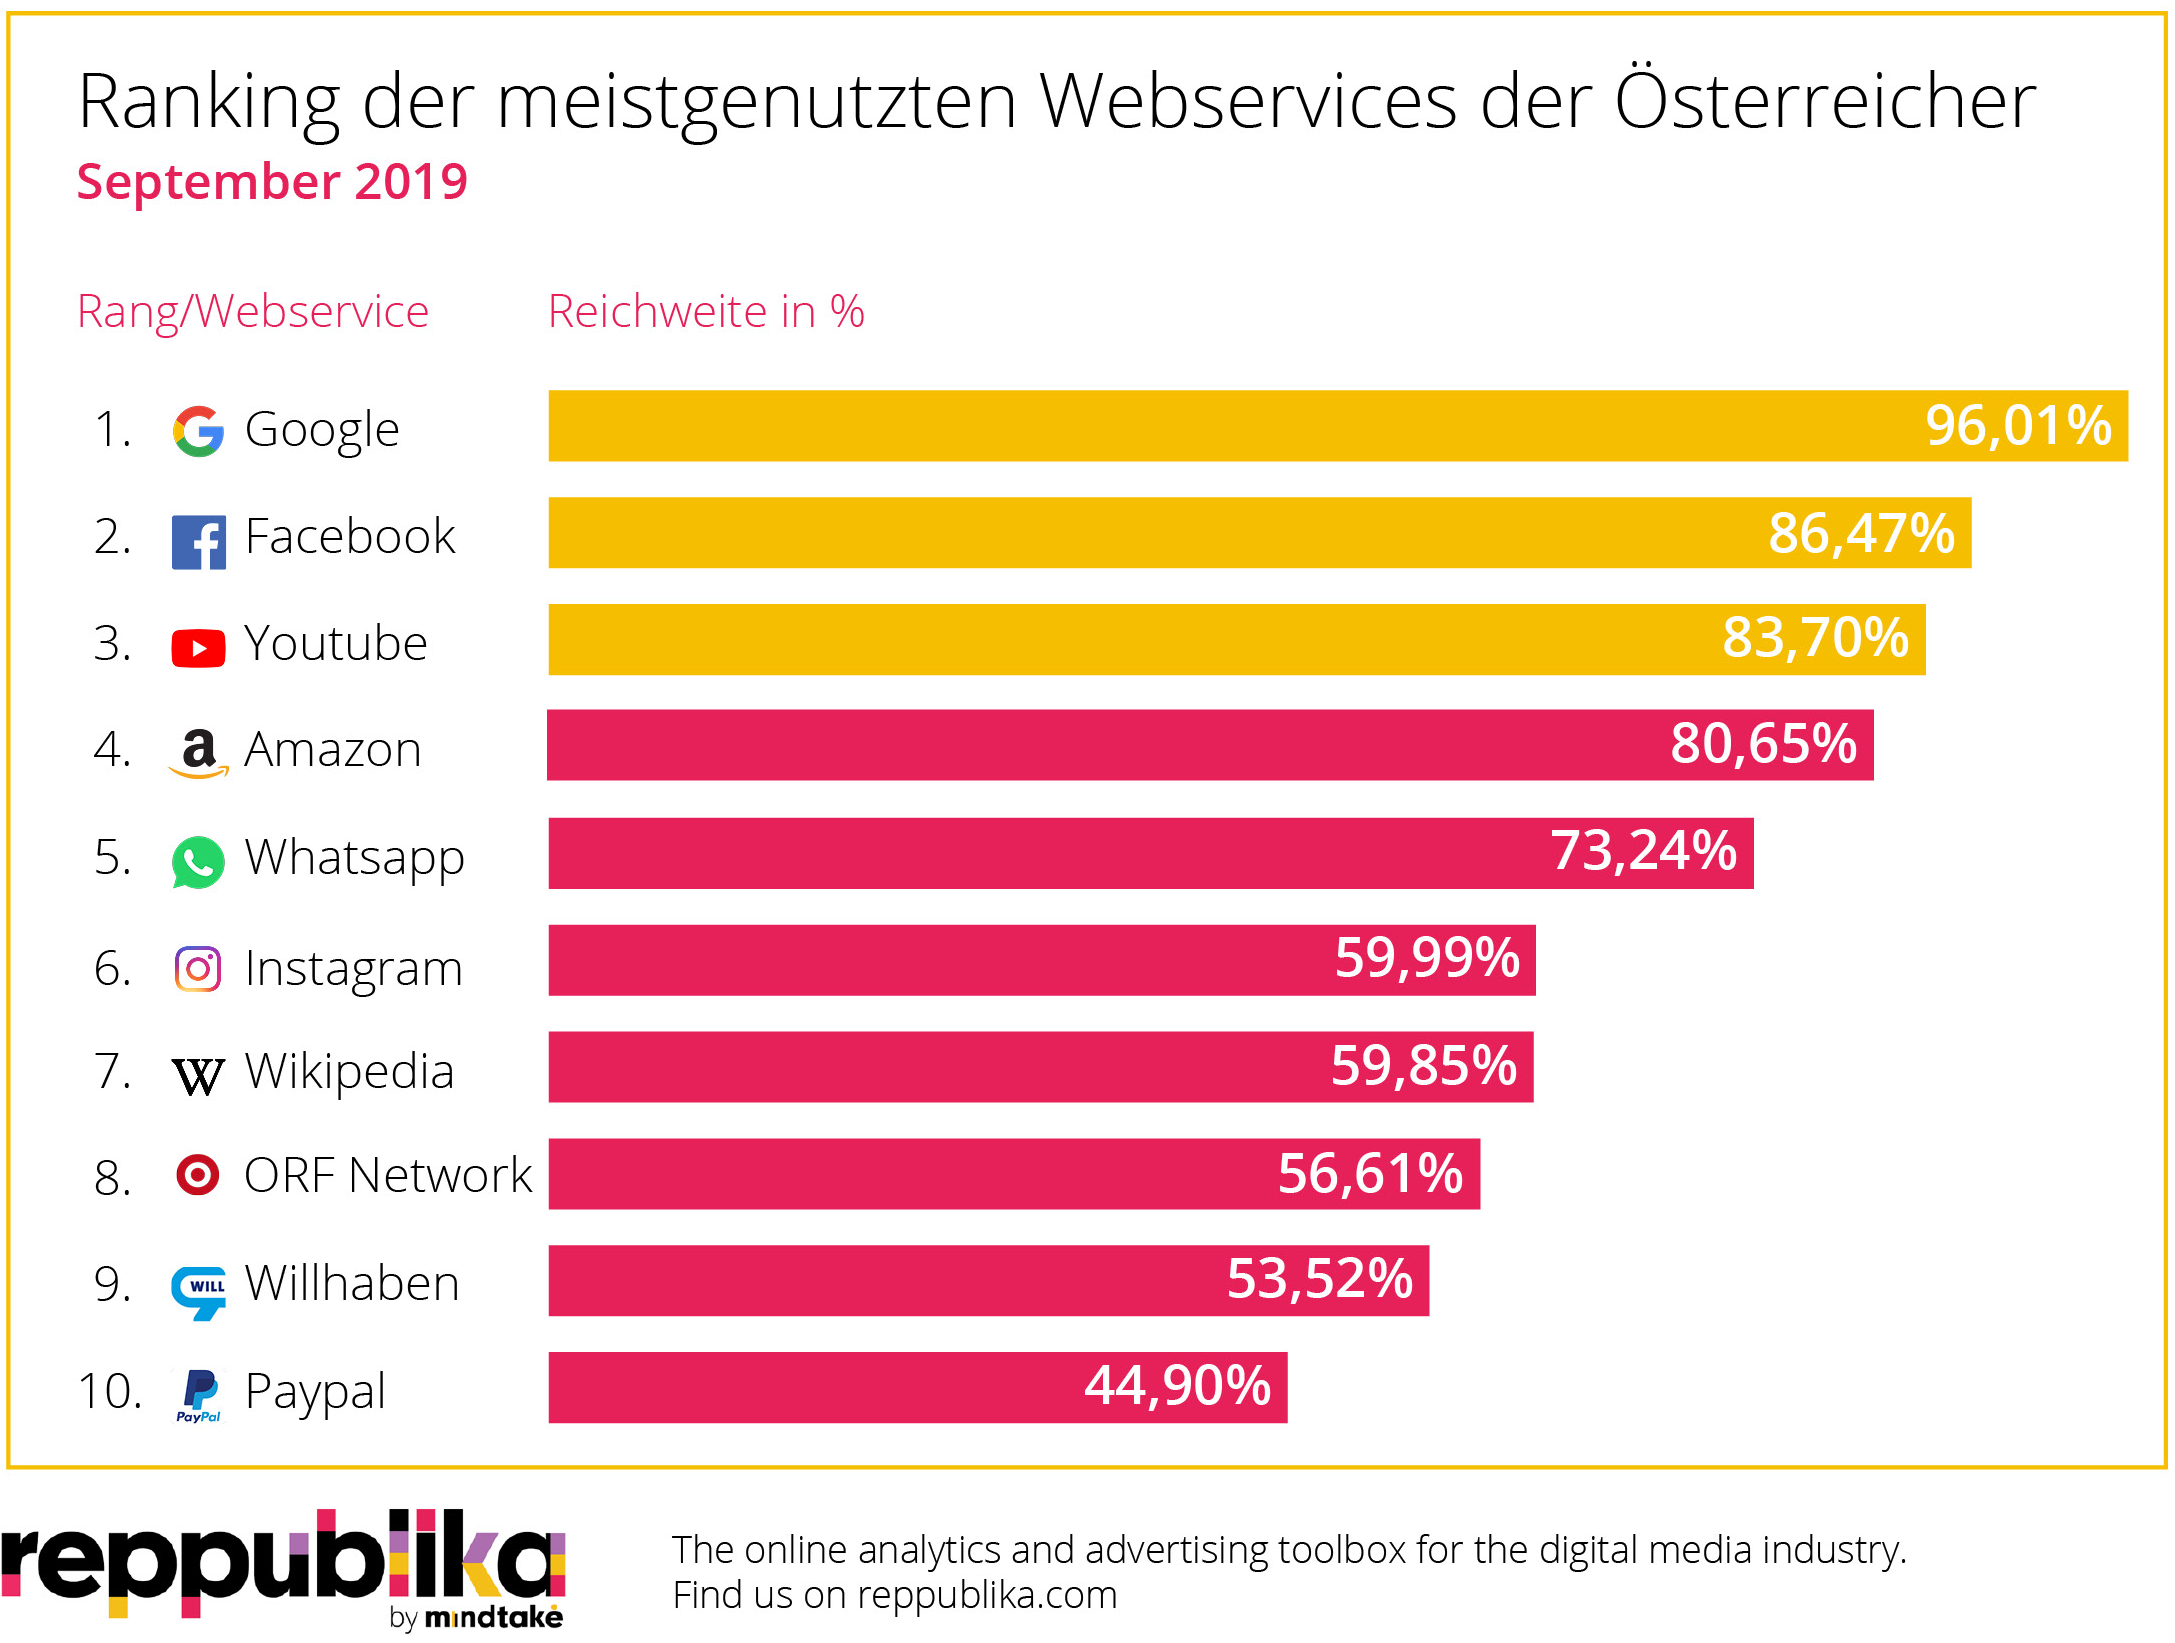 Google führt im September erneut das Ranking der beliebtesten Webservices der Österreicher an Der Suchmaschinengigant klassiert sich mit einer Reichweite von 96,0 Prozent, 6,3 Millionen Unique Users und einer Average Visit Duration von 2:00 Minuten auf den ersten Platz. Facebook klettert im September mit einer Reichweite von 86,5 Prozent Reichweite auf Platz 2 im Ranking: 5,7 Millionen Unique Users loggten sich durchschnittlich für 8:07 Minuten im Social Network ein und verteilten Likes und Kommentare. Die Video-Plattform YouTube rangiert mit einer Reichweite von 83,7 Prozent auf Platz 3 im September-Ranking. 